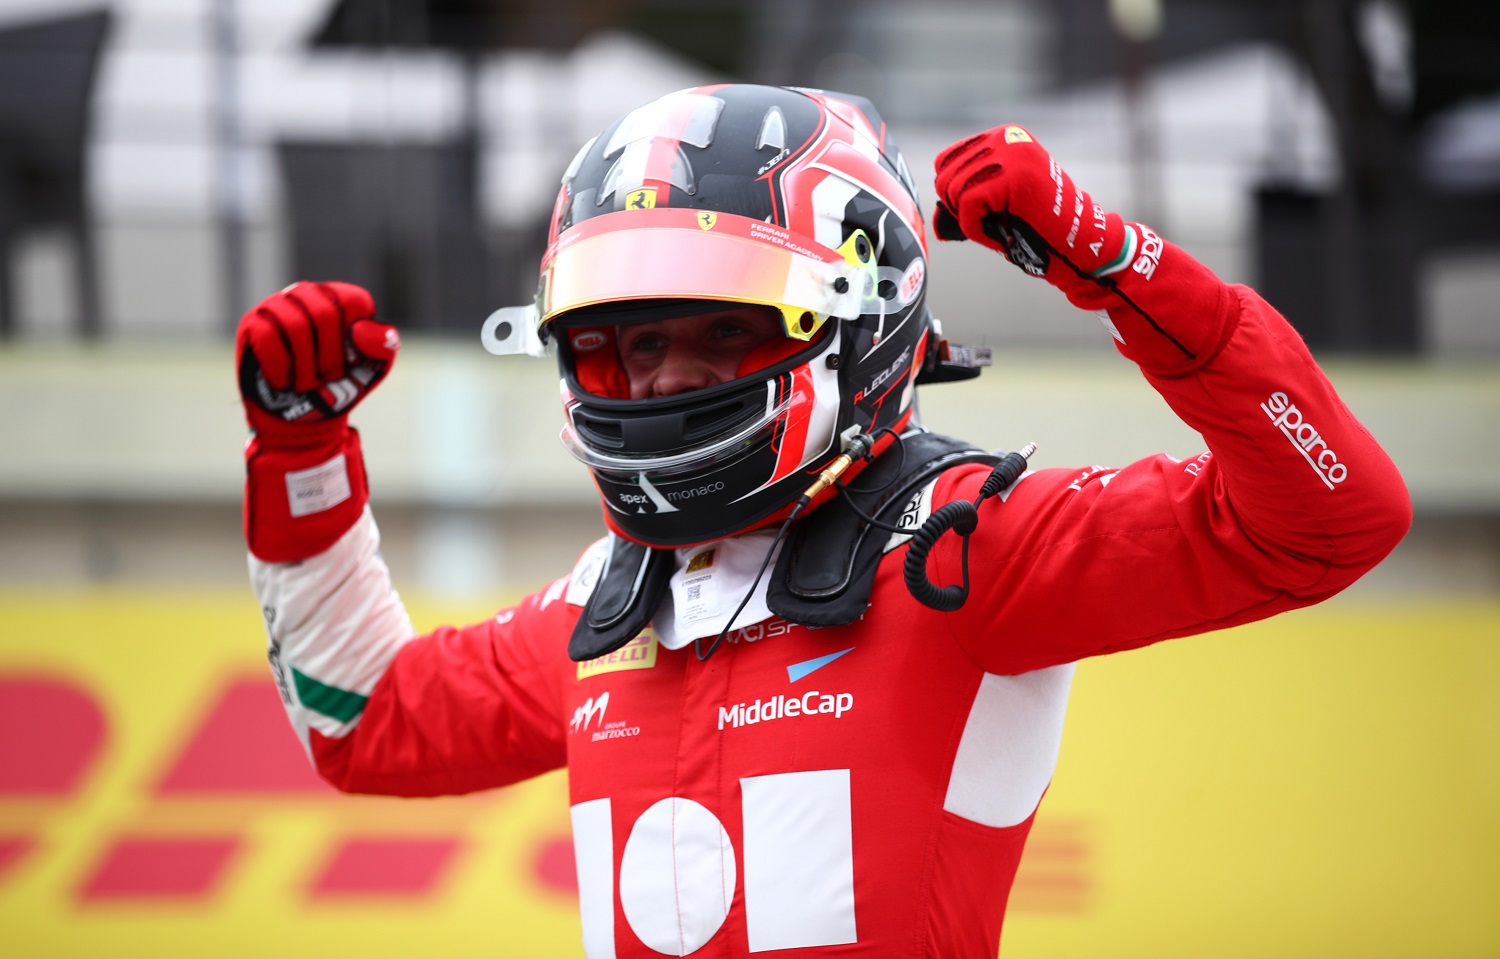 Leclerc won his second sprint race!